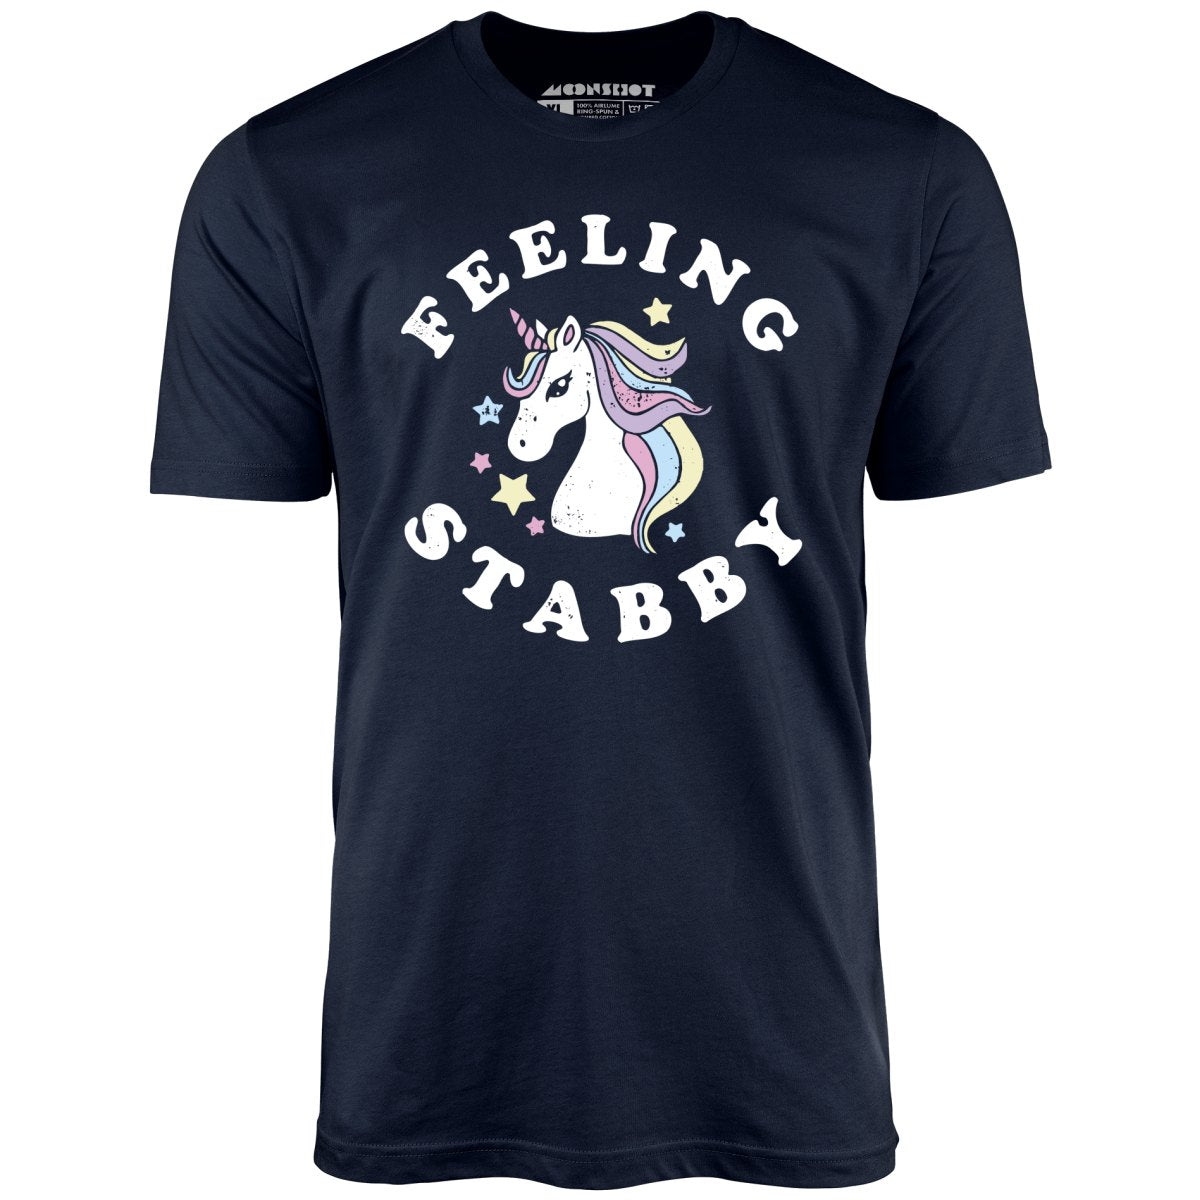 Feeling Stabby - Unisex T-Shirt